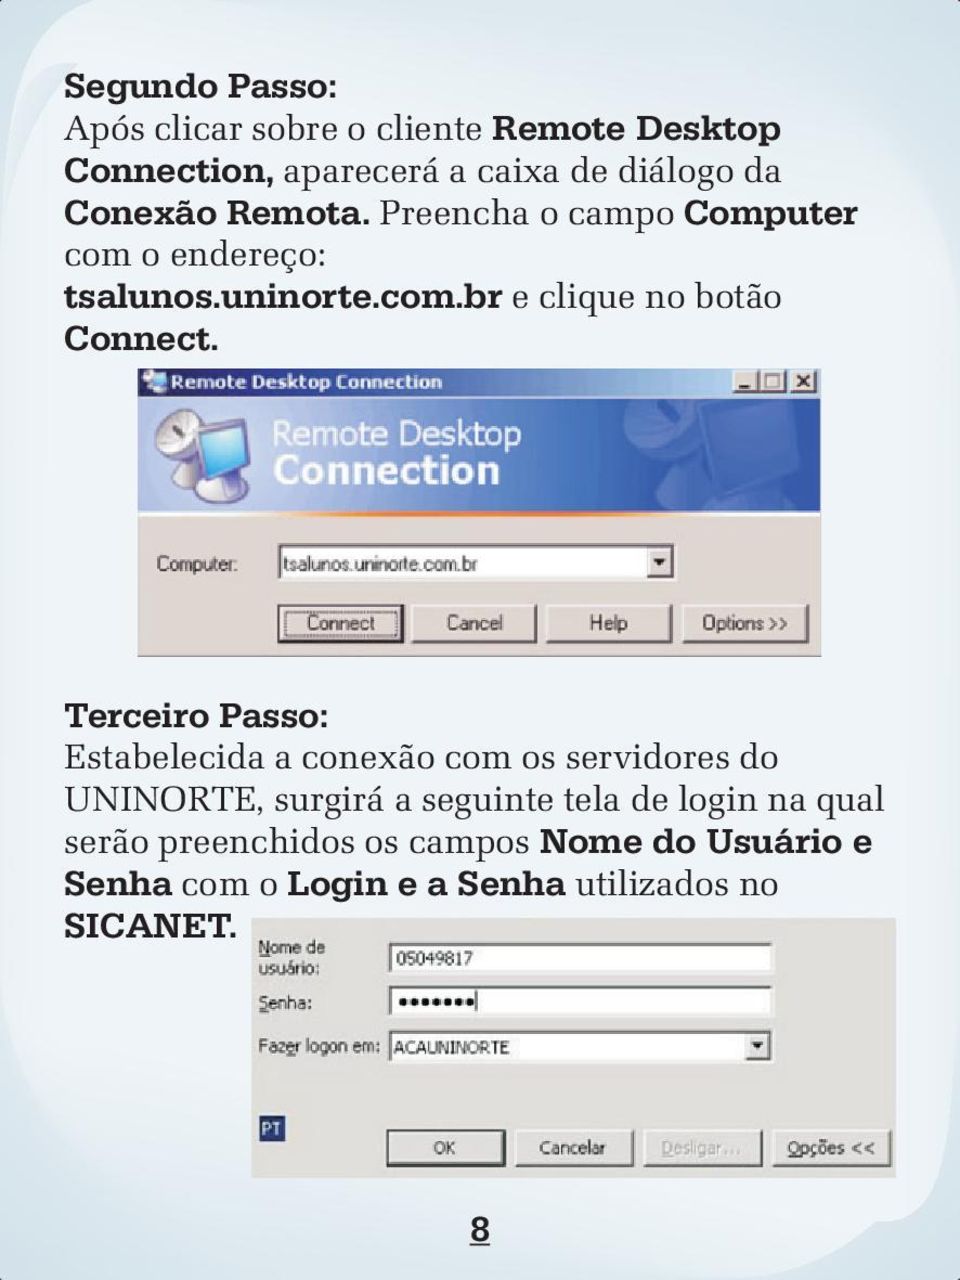 Terceiro Passo: Estabelecida a conexão com os servidores do UNINORTE, surgirá a seguinte tela de login na